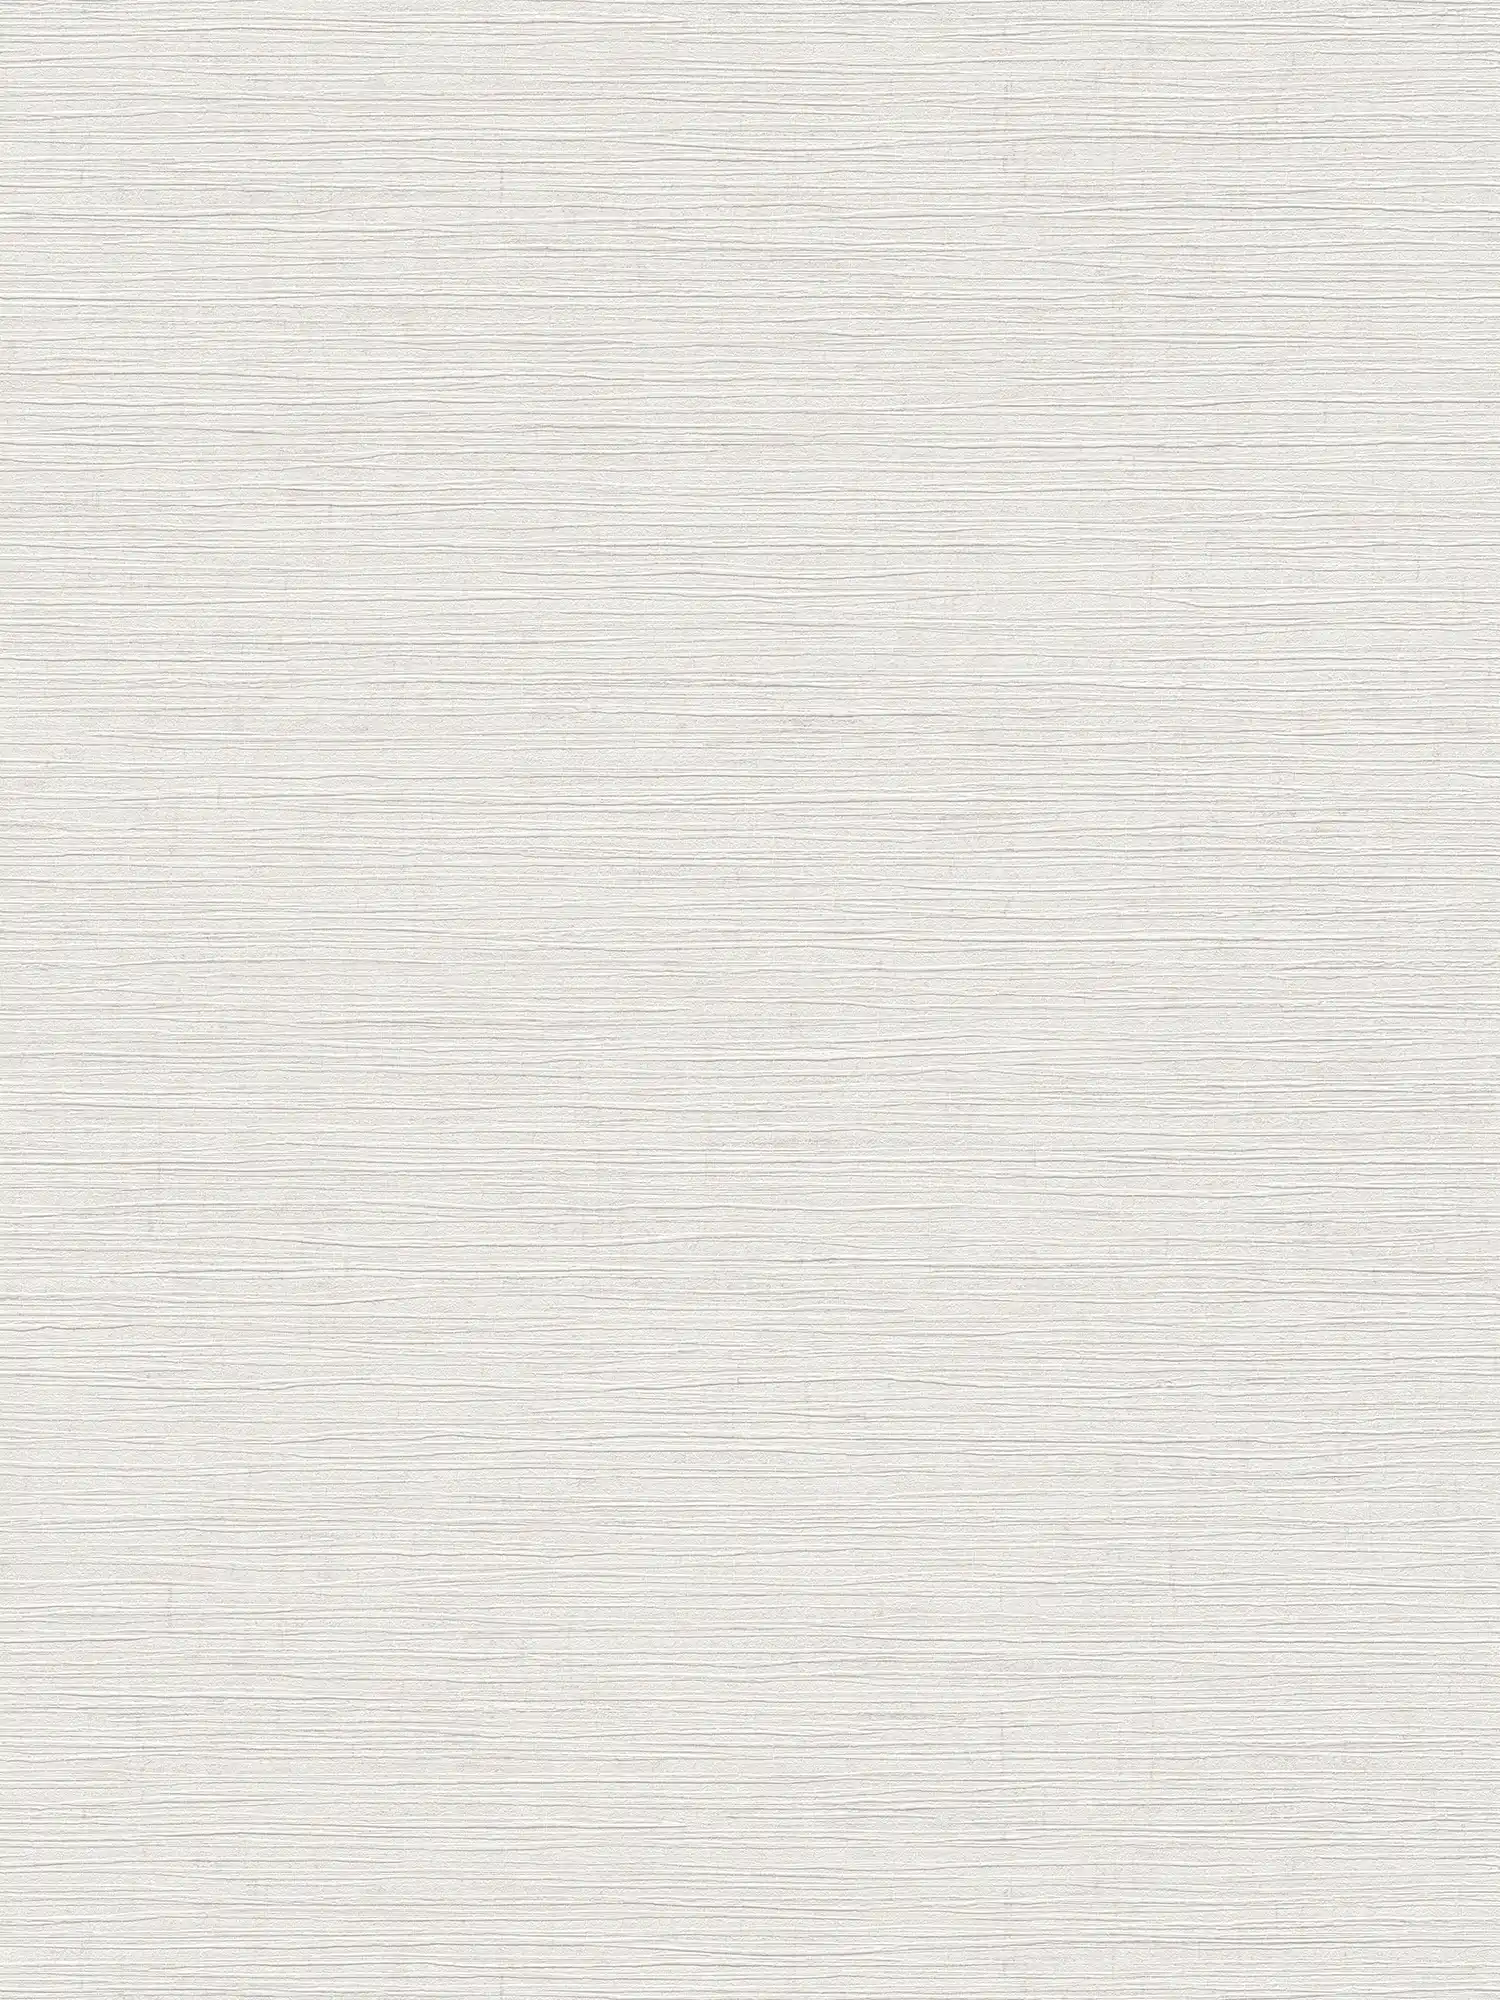         Melange plain wallpaper with embossed pattern - white
    